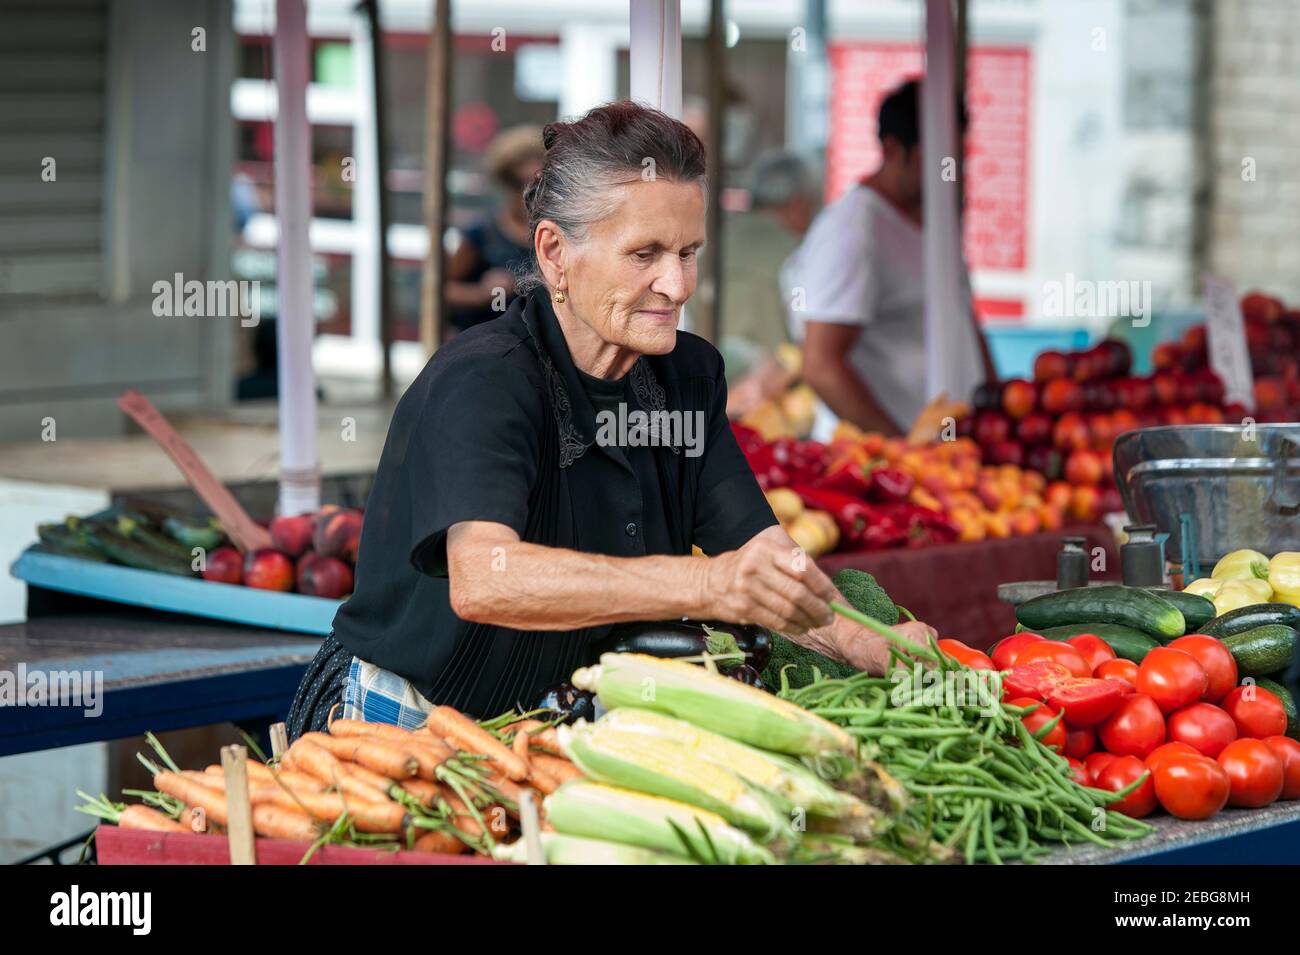 Spalato - Croazia - 25 agosto 2019: Donna anziana vende verdure in un mercato a Spalato, Croazia Foto Stock